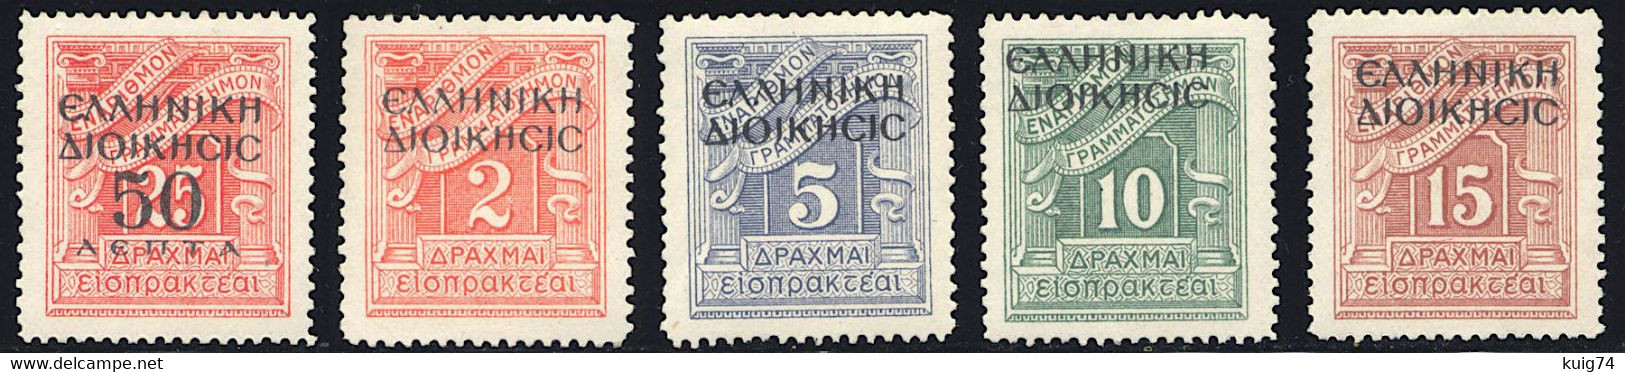 1940 OCCUPAZIONE GRECA-ALBANIA SEGNATASSE N.1-5 NUOVI** INTEGRI SPLENDIDI - MNH LUXUS - Occup. Greca: Albania